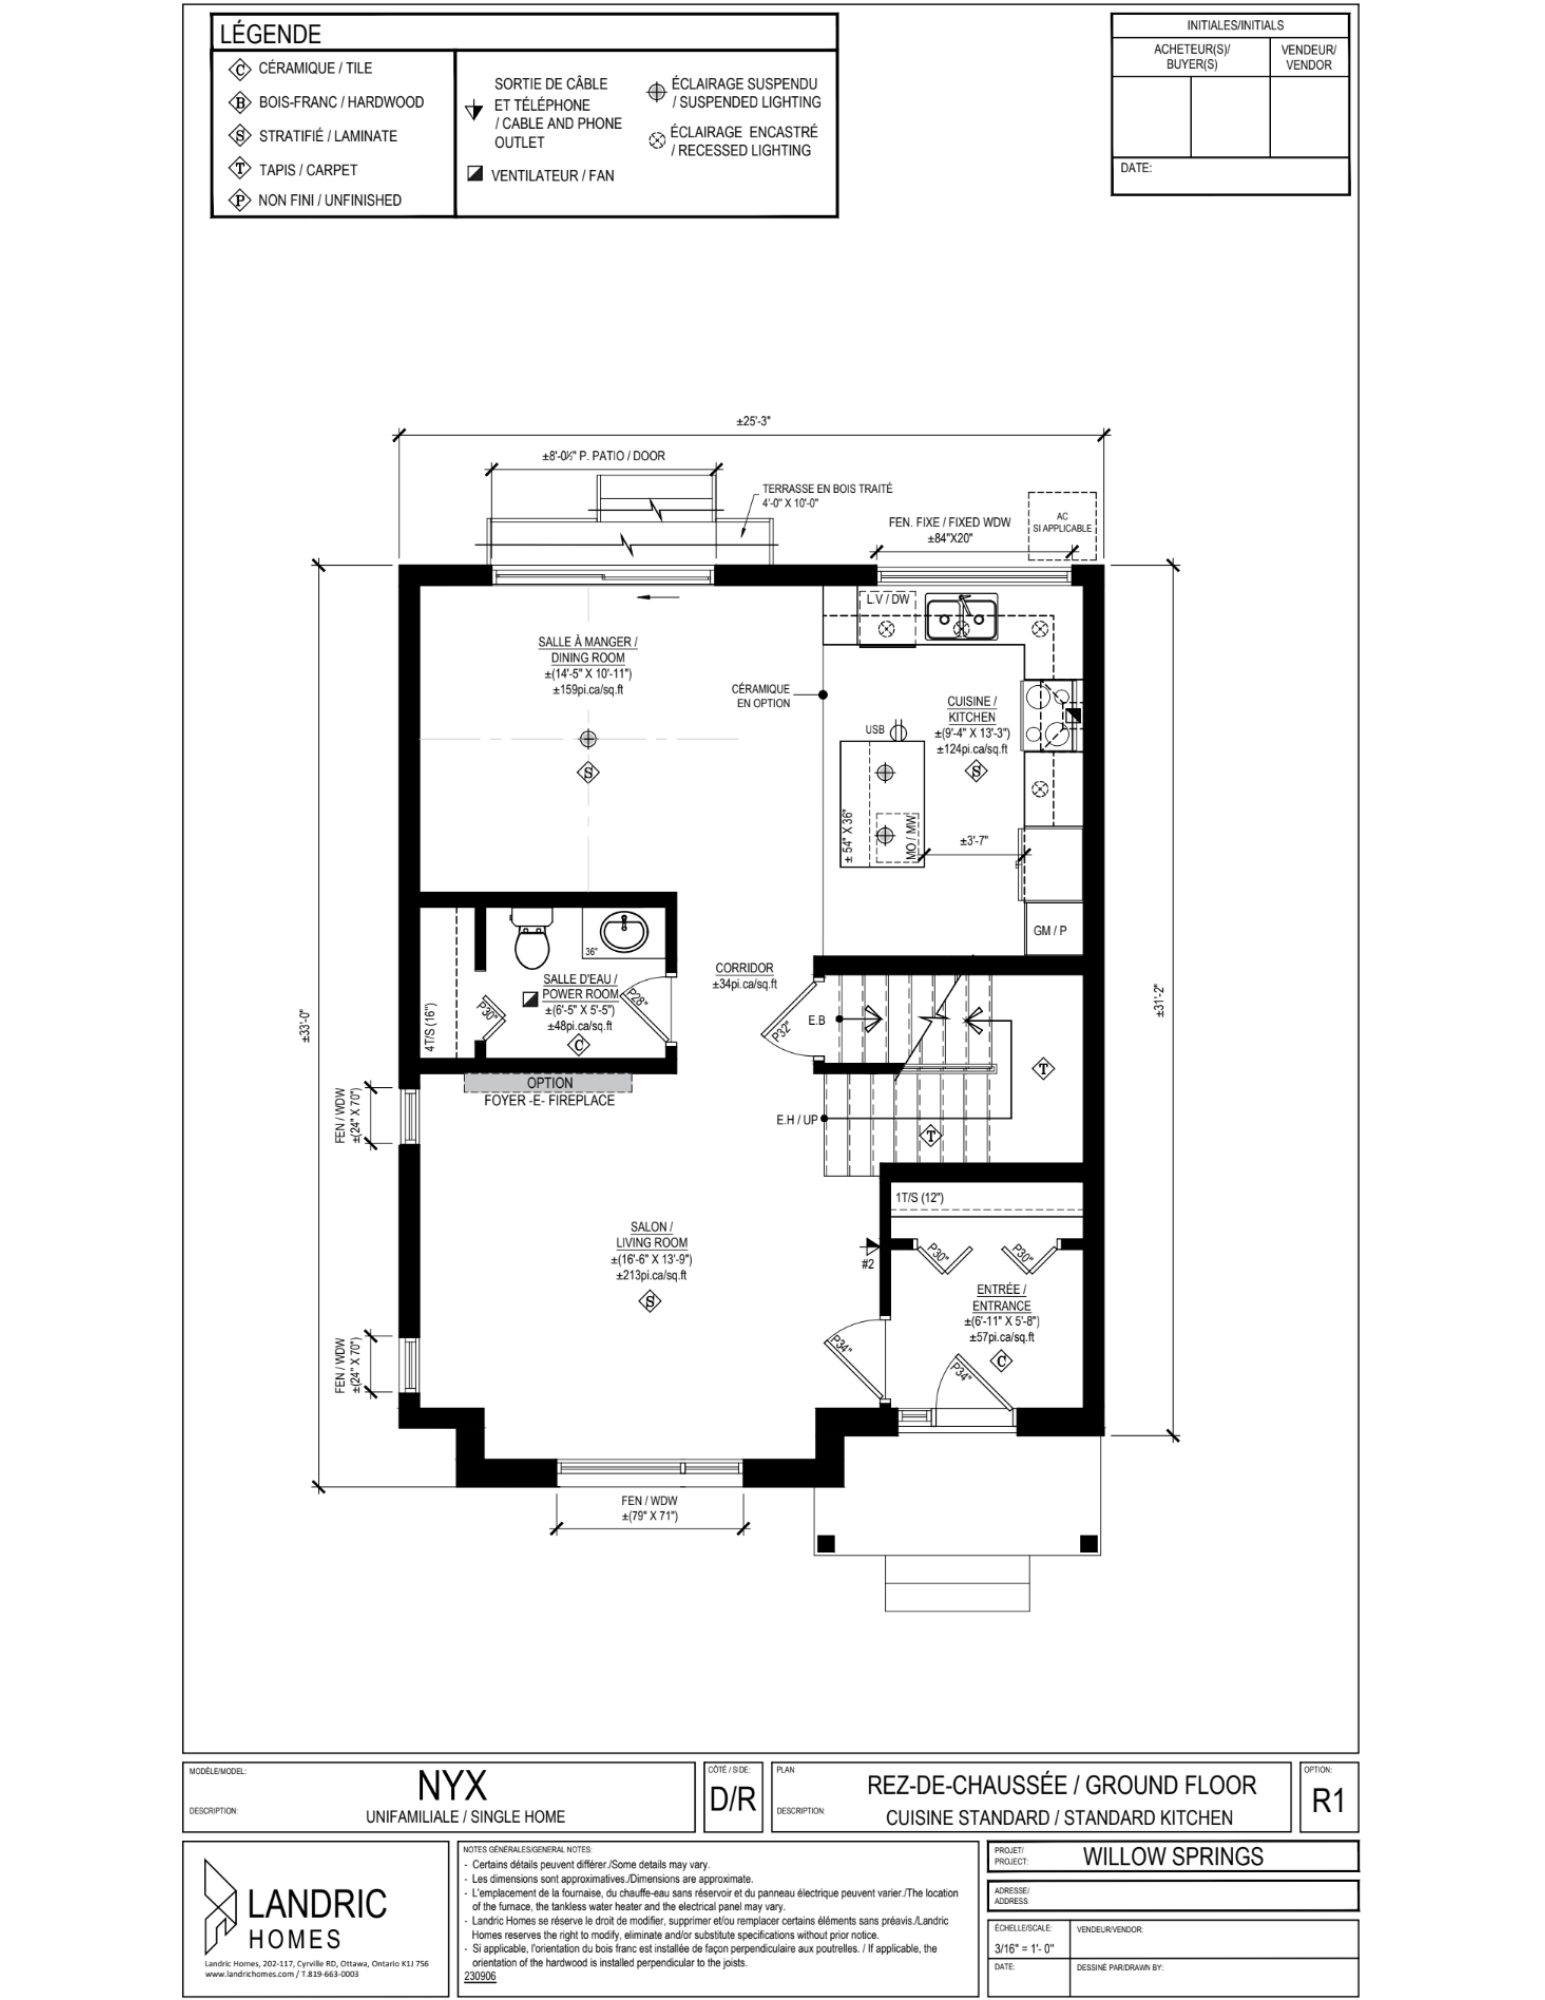 Willow Springs, Limoges floor plans (19)